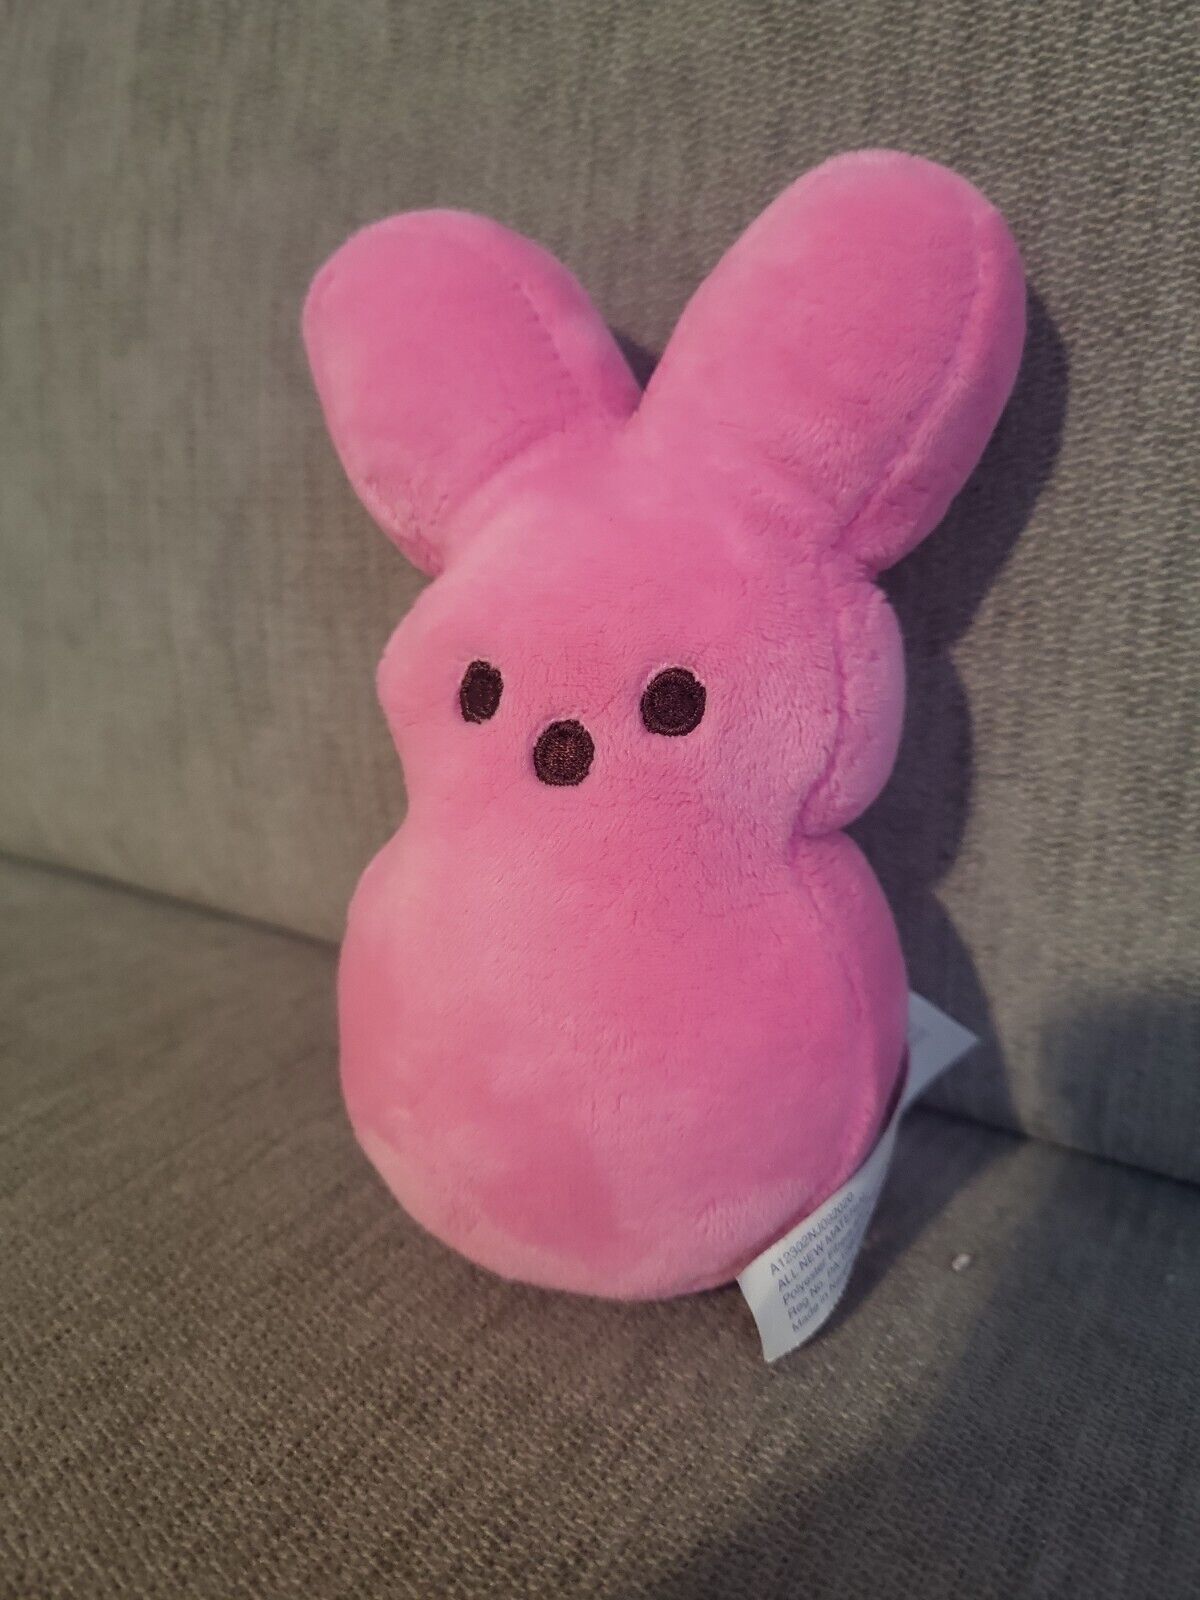 Pink peep plushie stuff animal mini 5\